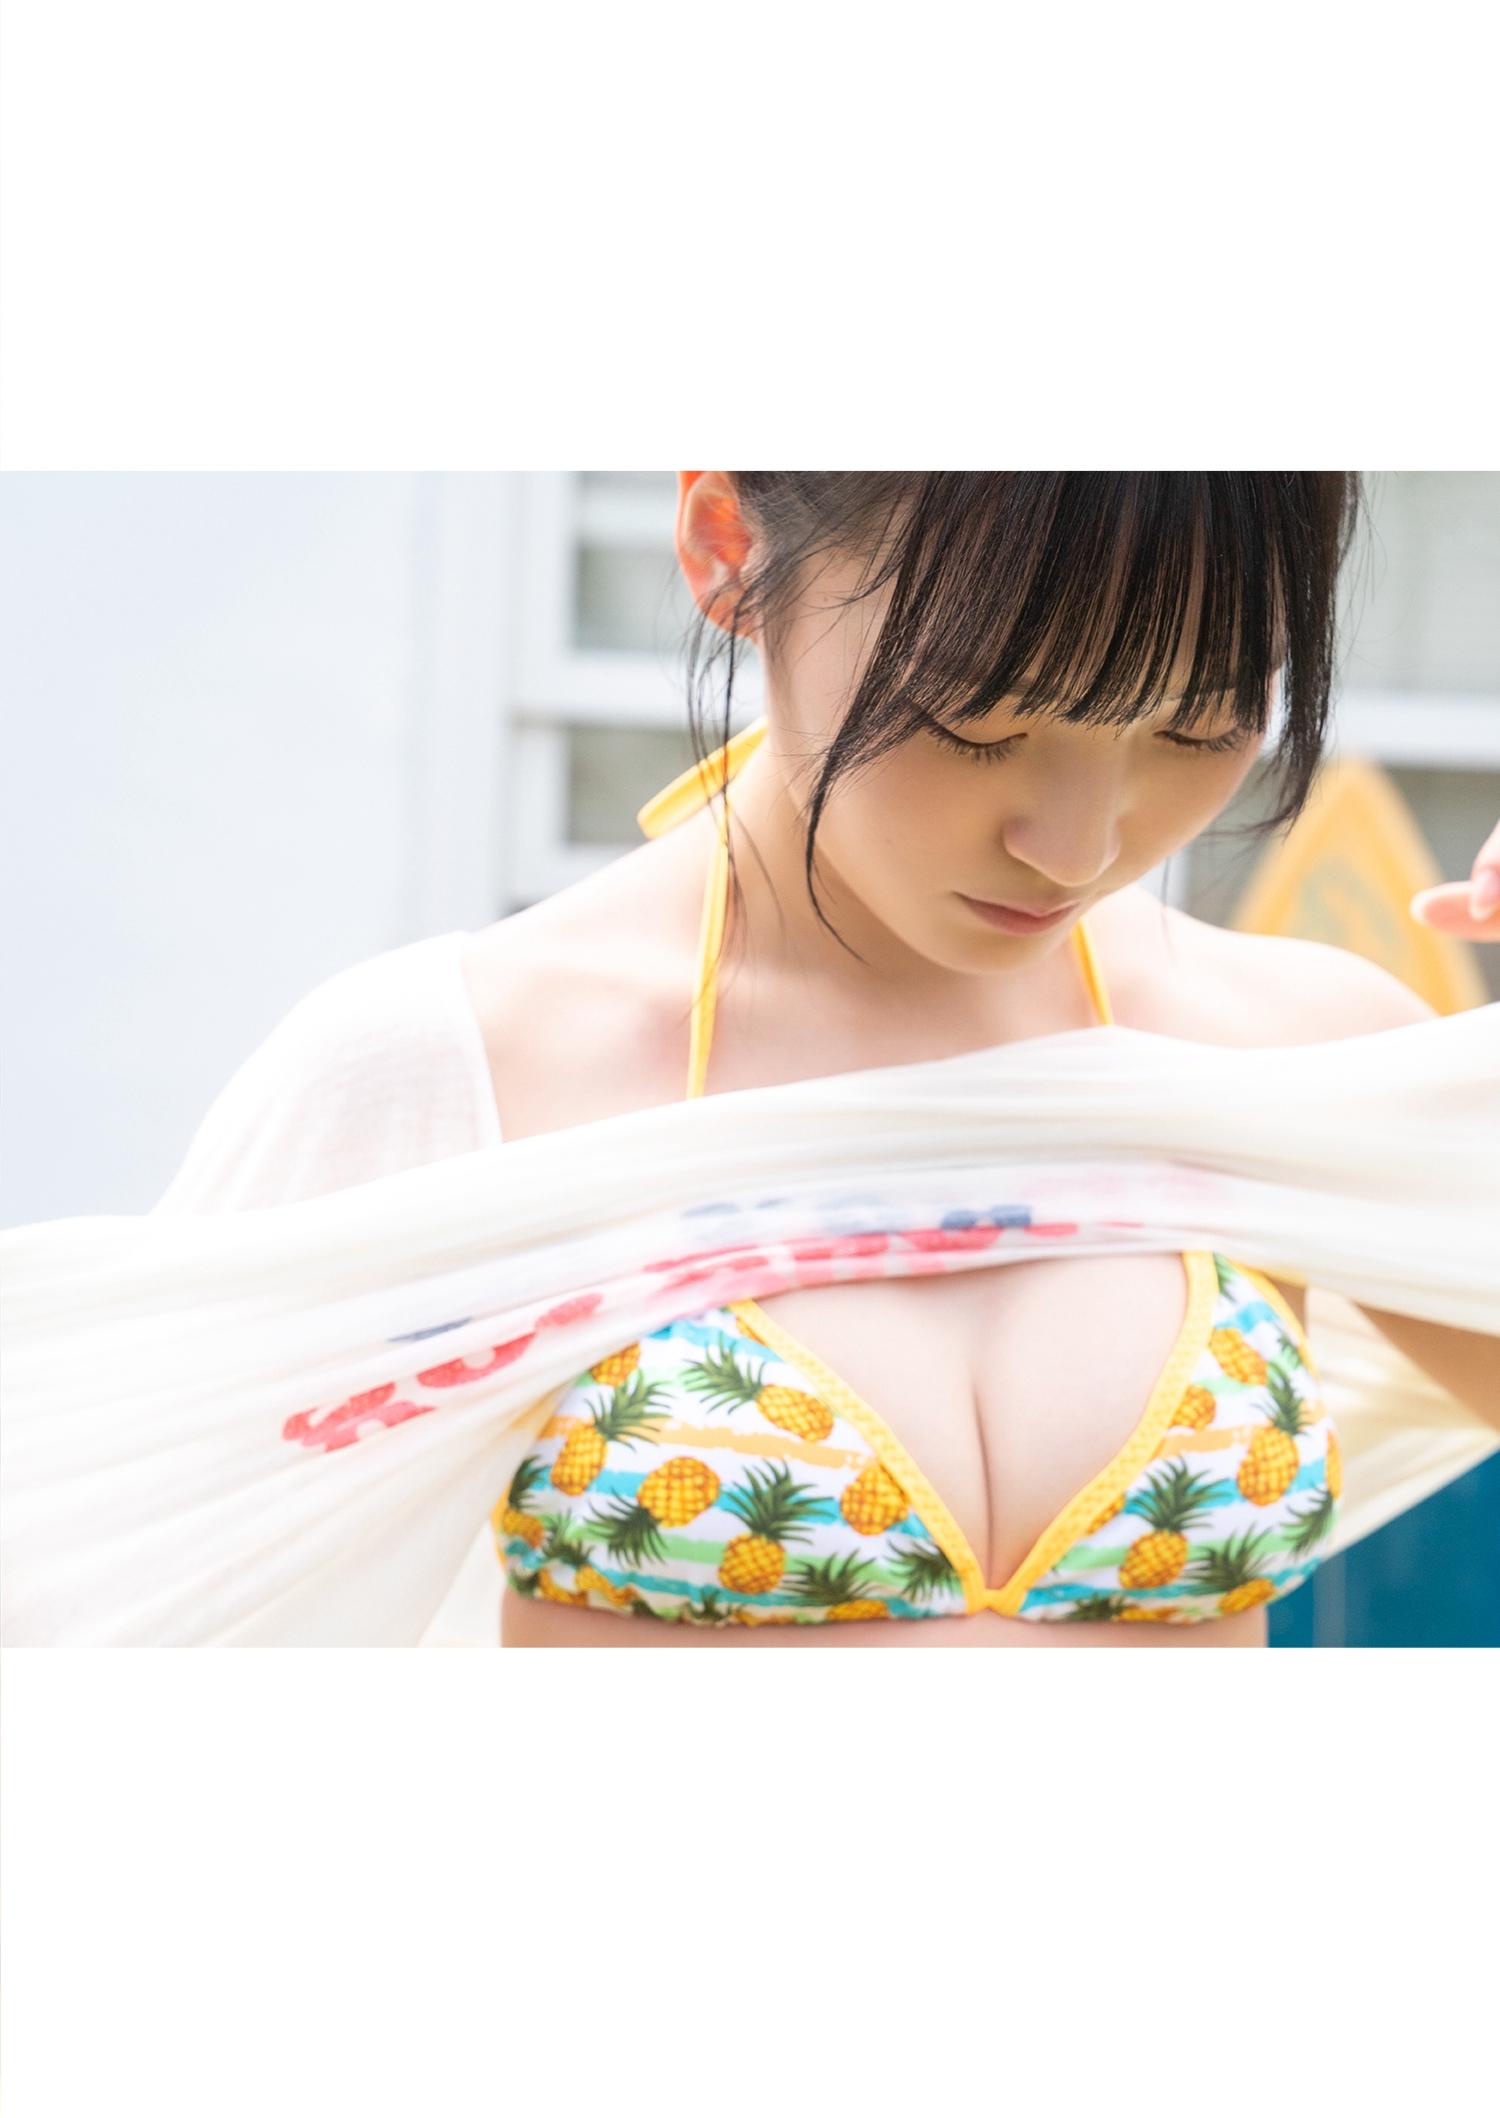 由良ゆら(よーよーよー)写真集「“Azatoi”Summer Girl」比基尼泳装与蕾丝内衣诱惑,0006